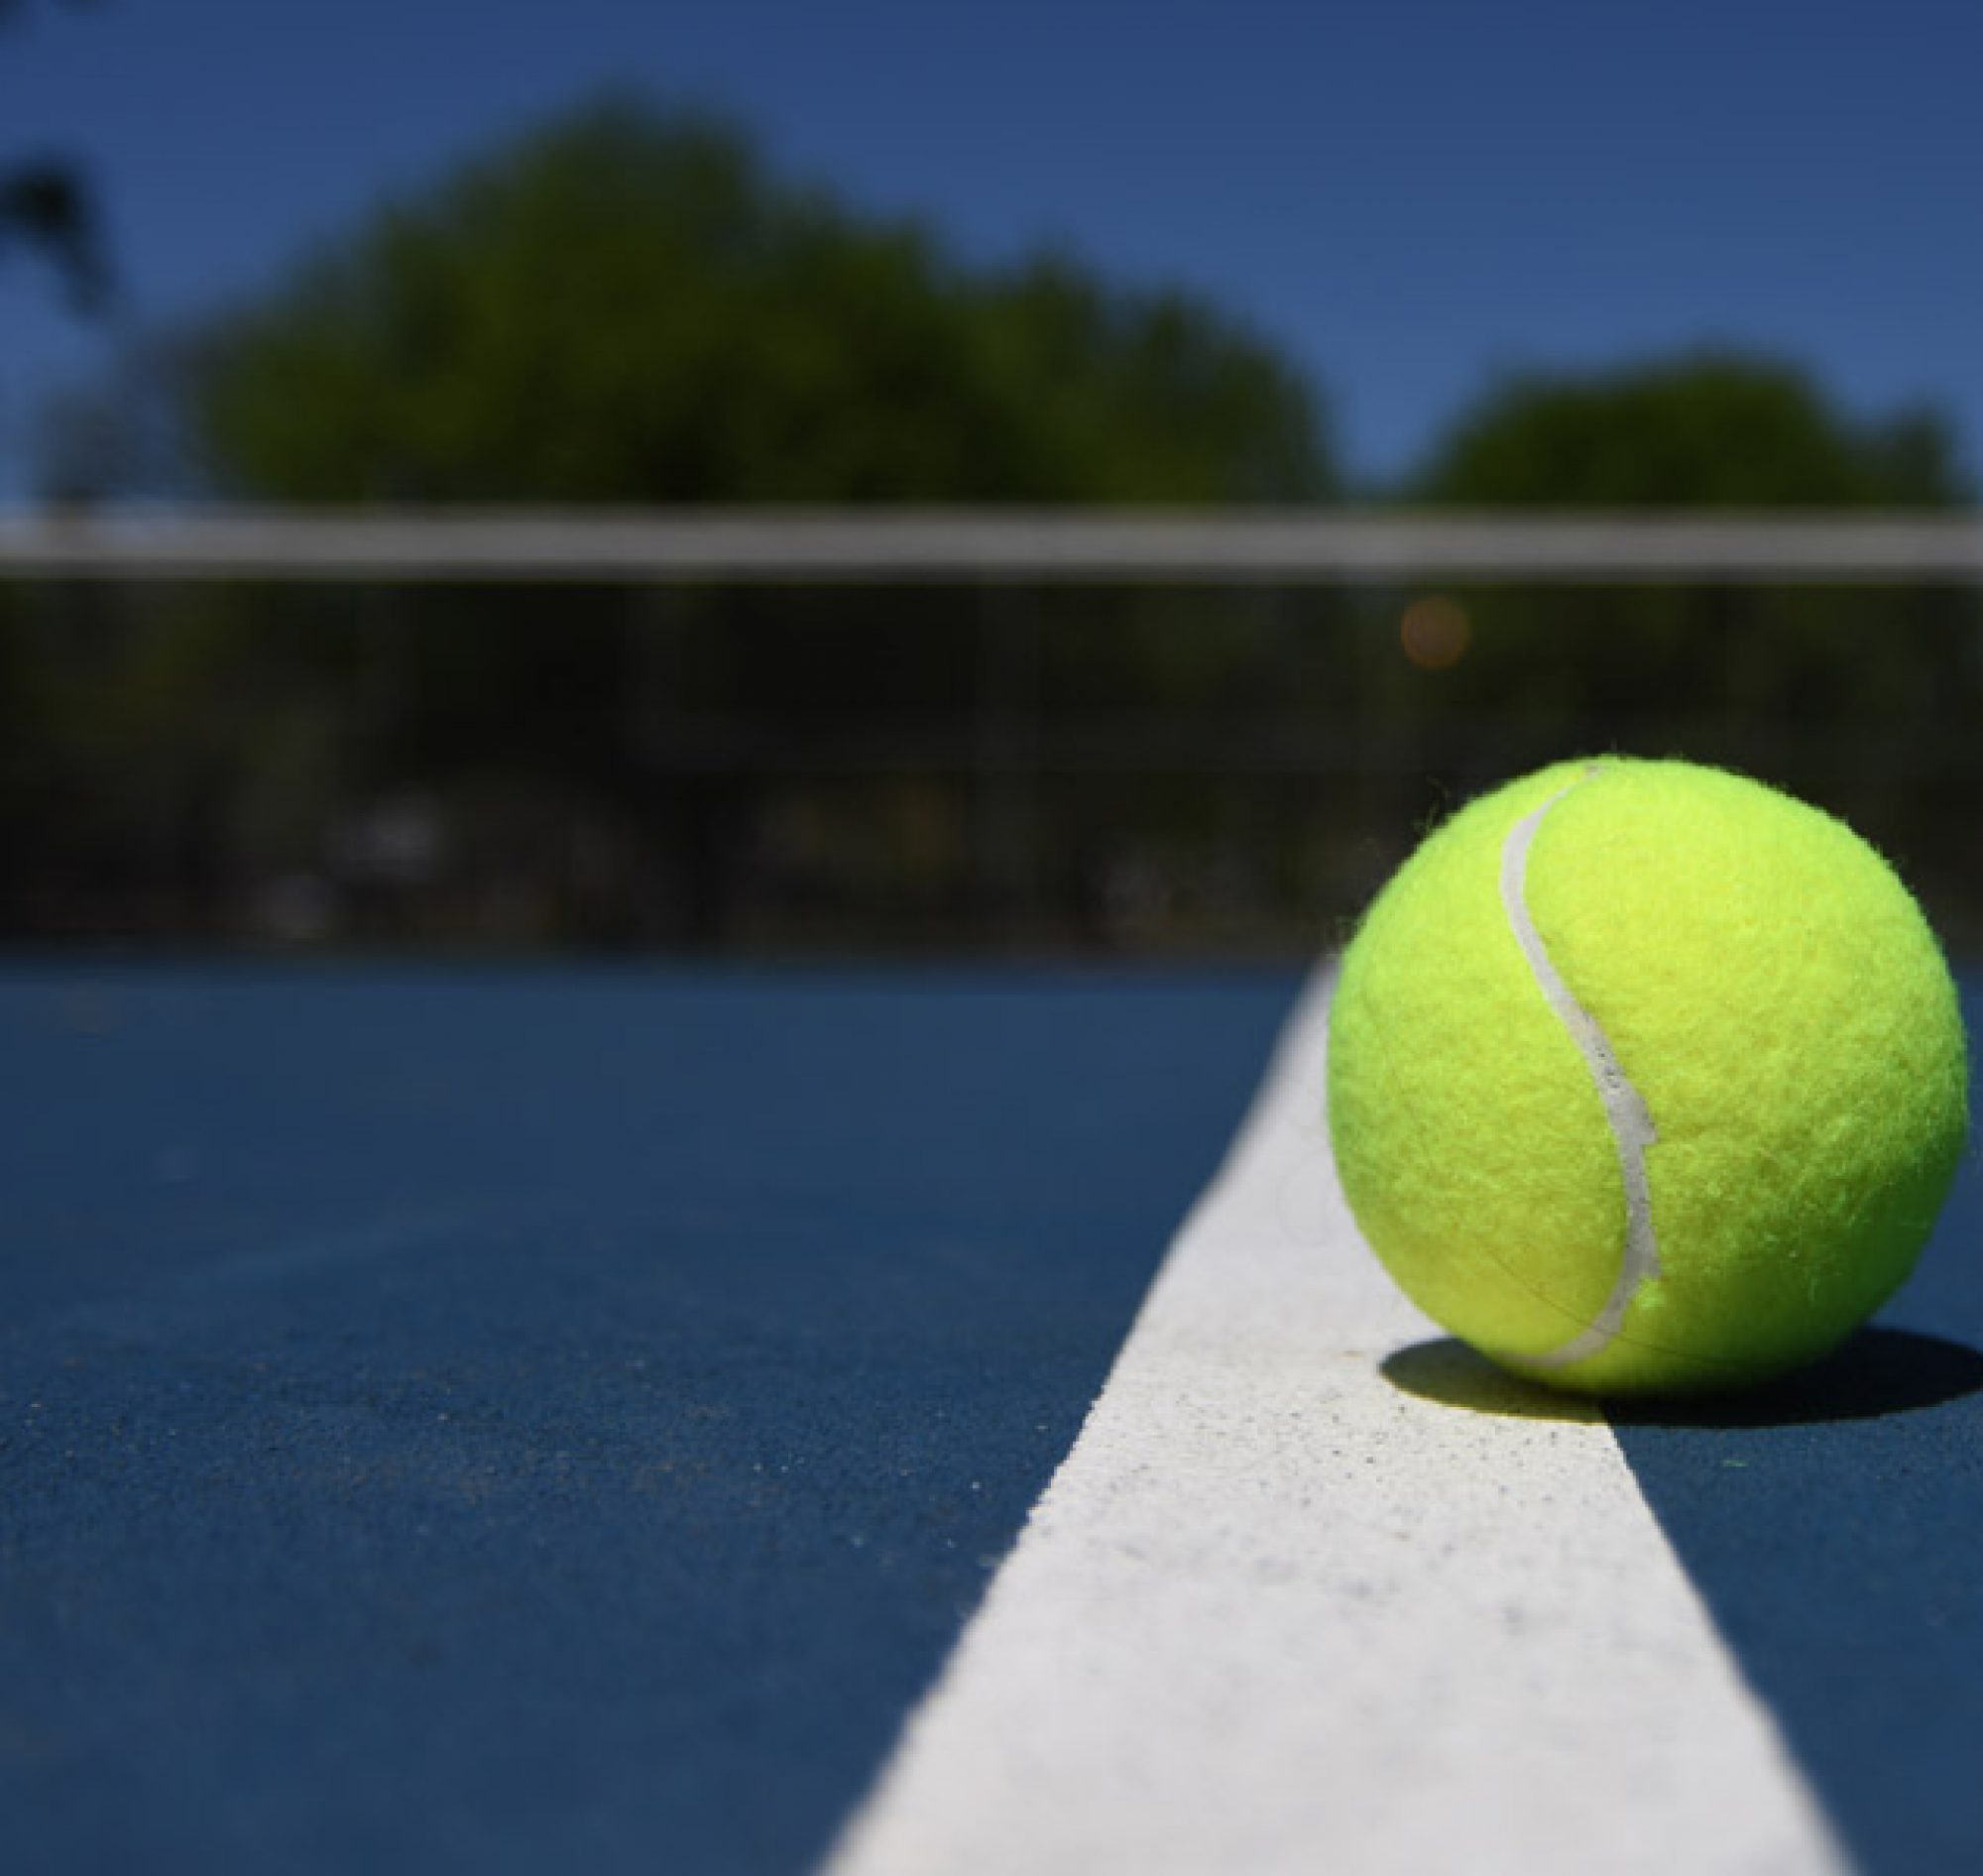 テニス / é¦ç¹ å³è© è¥å¹²å¿é ããã¹ãã¥ã¼ã¹ ããã¹365 Tennis365 Net å½åæå¤§ç´ããã¹ãµã¤ã / Places kobe sport & recreationtennis court itc テニススクール.